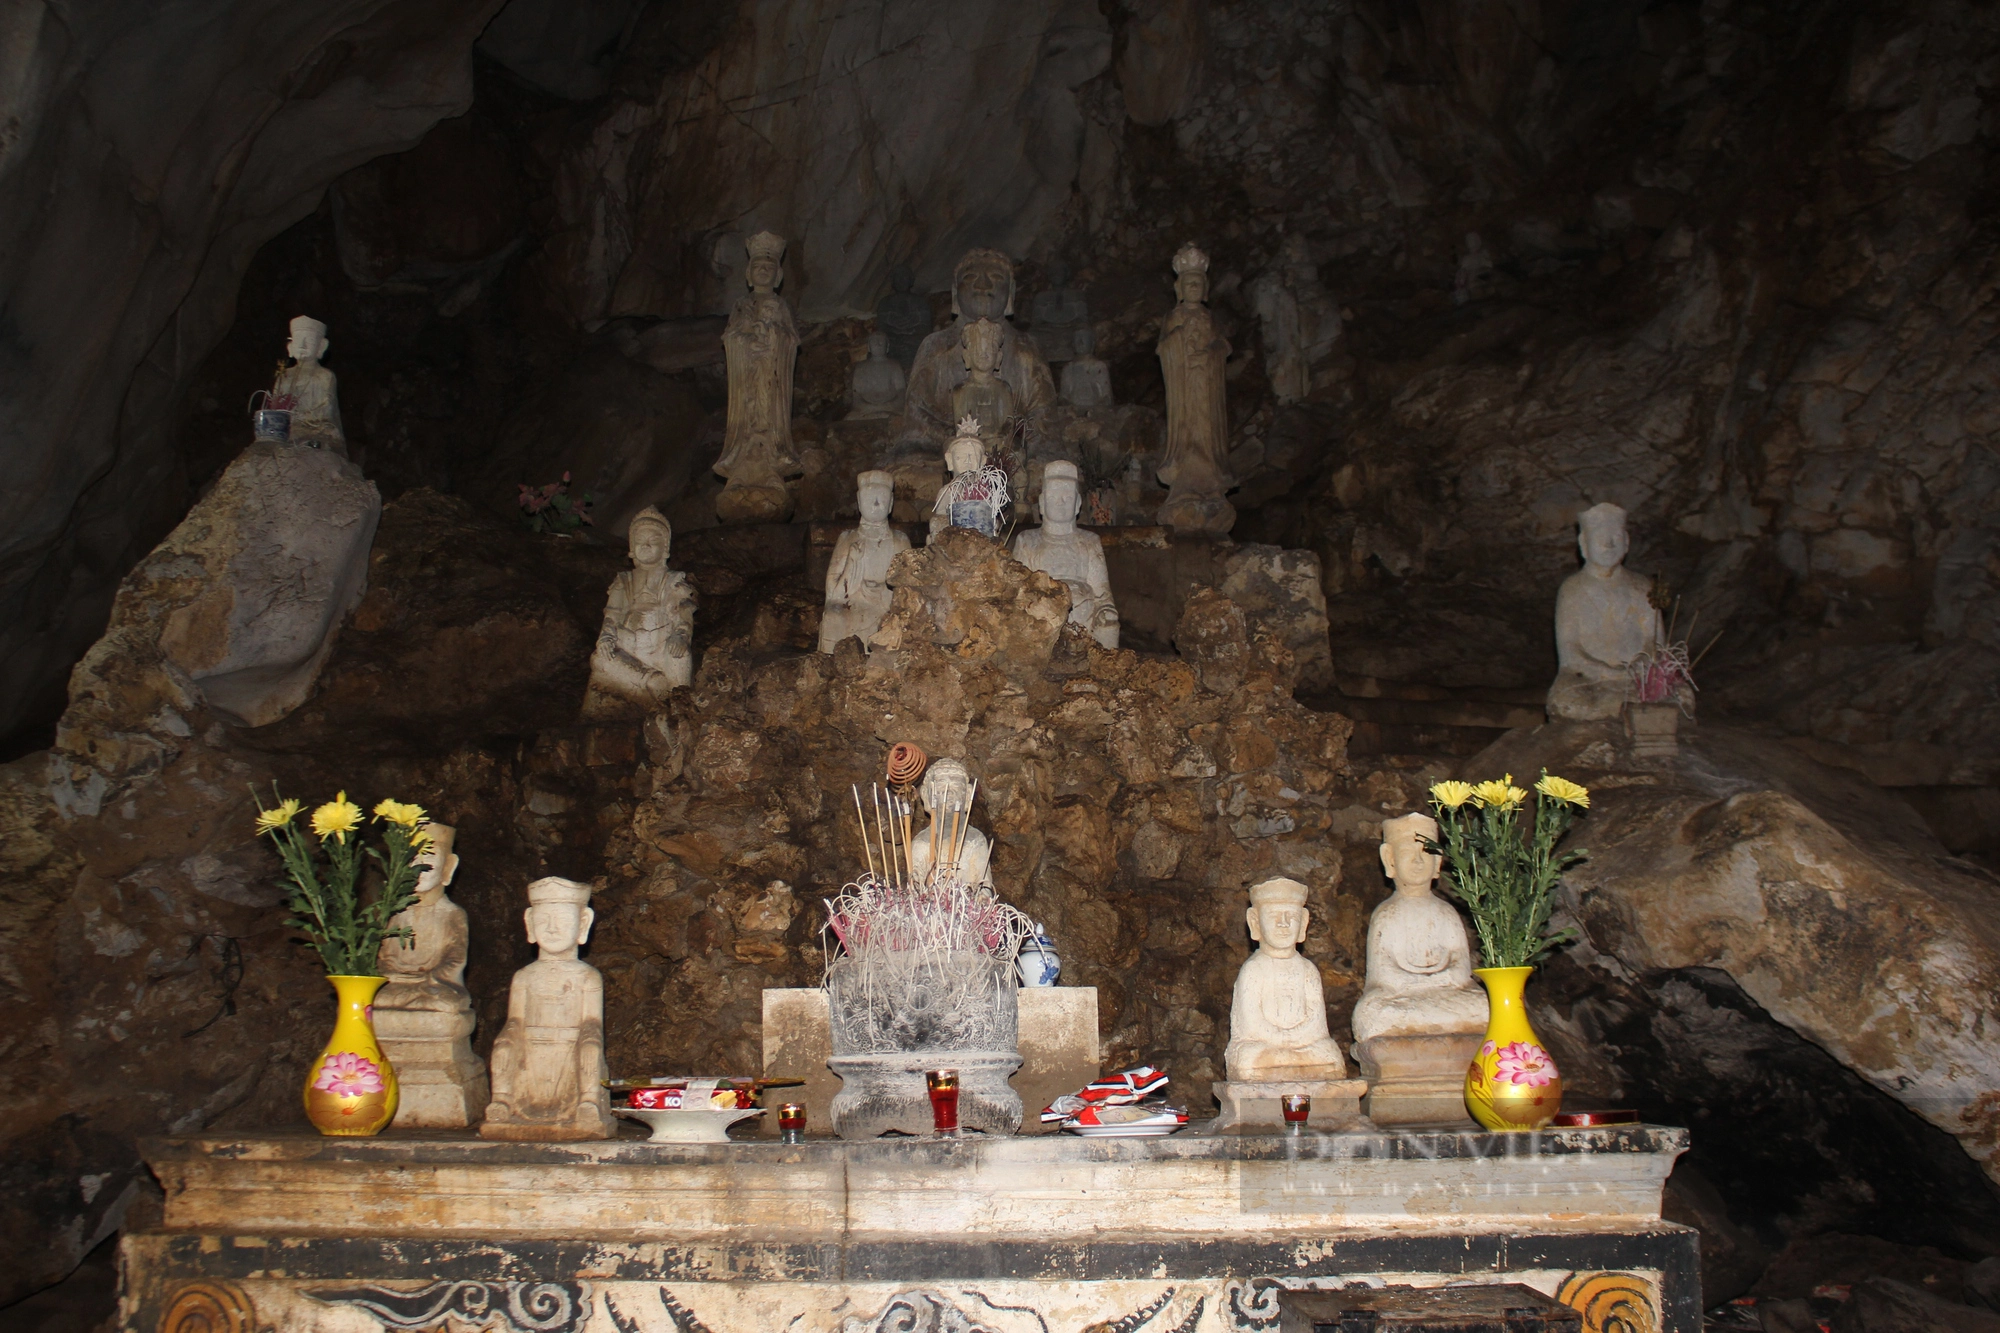 Kỳ vĩ ngôi chùa cổ ở Hà Nội với nhiều tượng Phật bằng đá, nơi Bác Hồ đọc Lời kêu gọi toàn quốc kháng chiến - Ảnh 4.